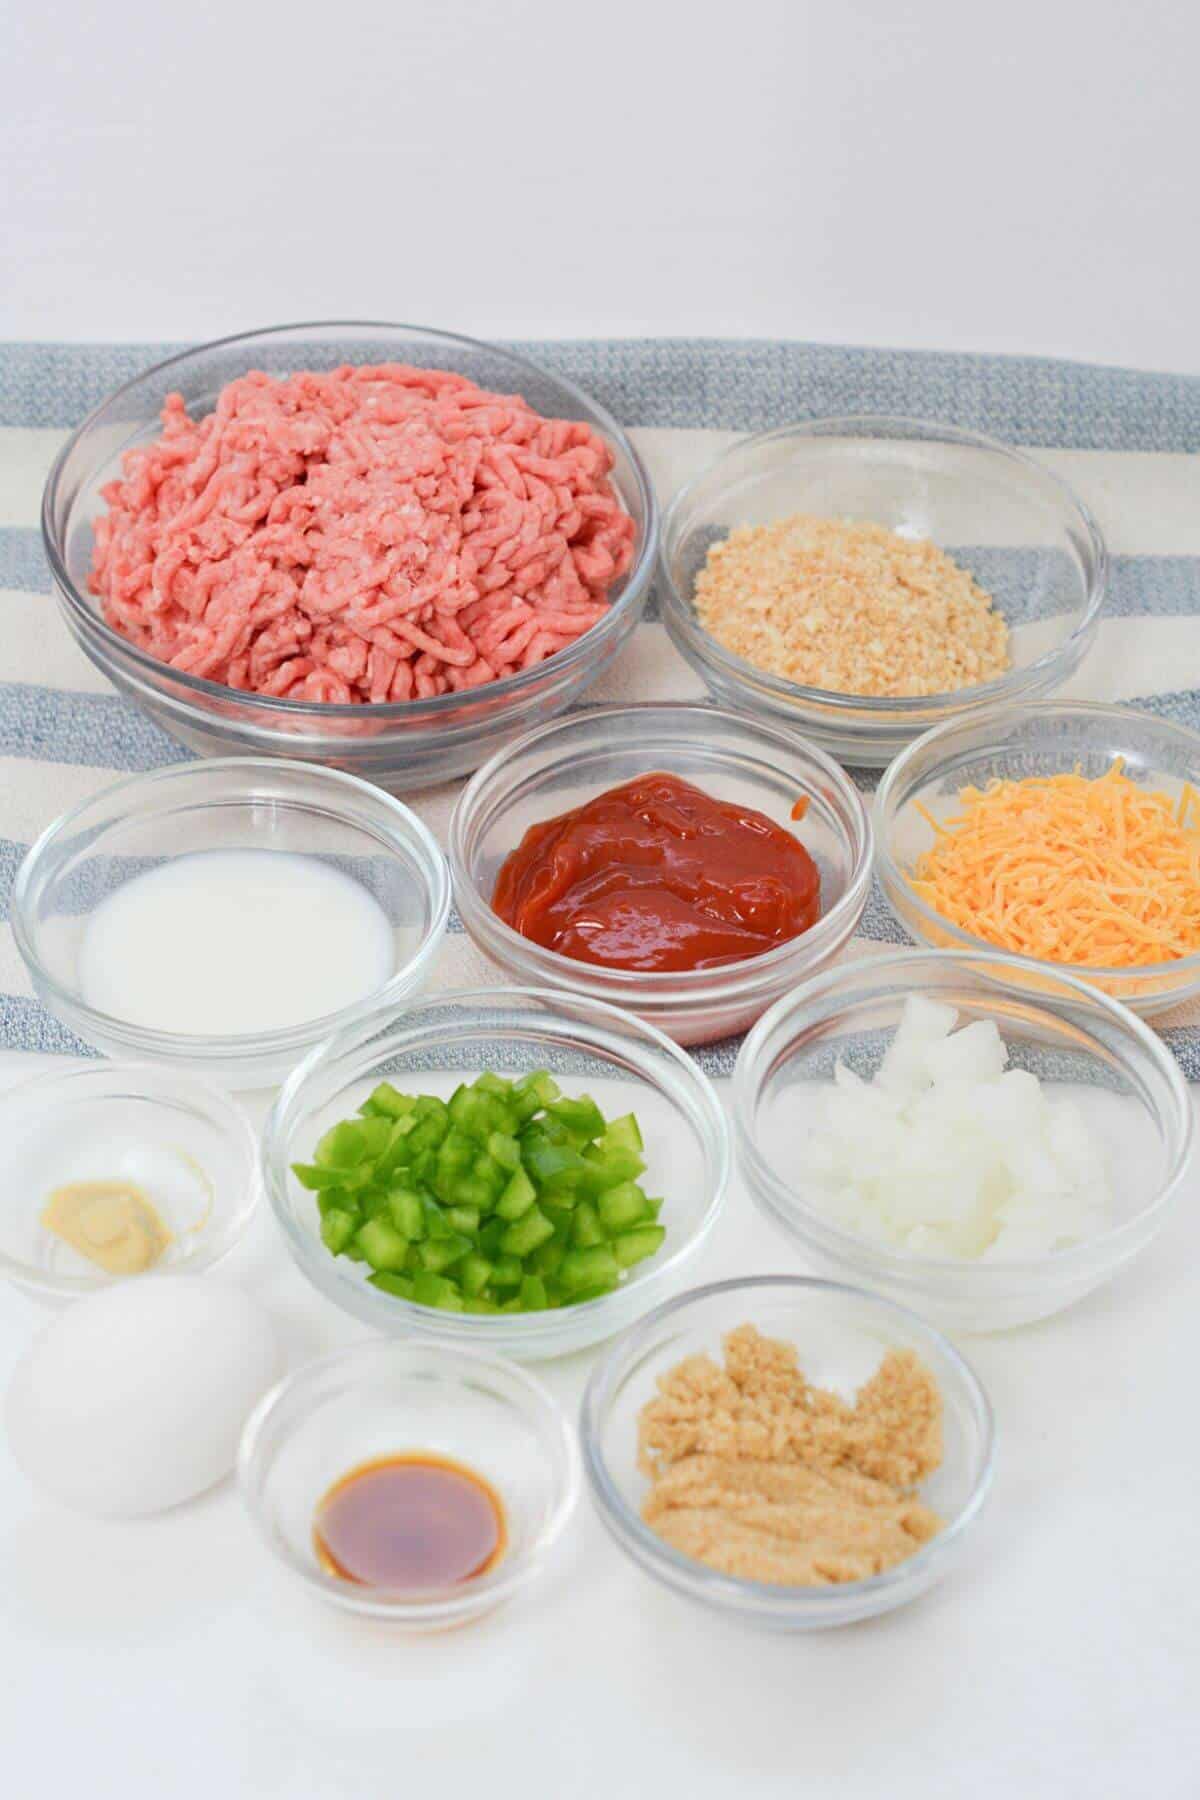 Ingredients for copycat Cracker Barrel Meatloaf in bowls on a table.